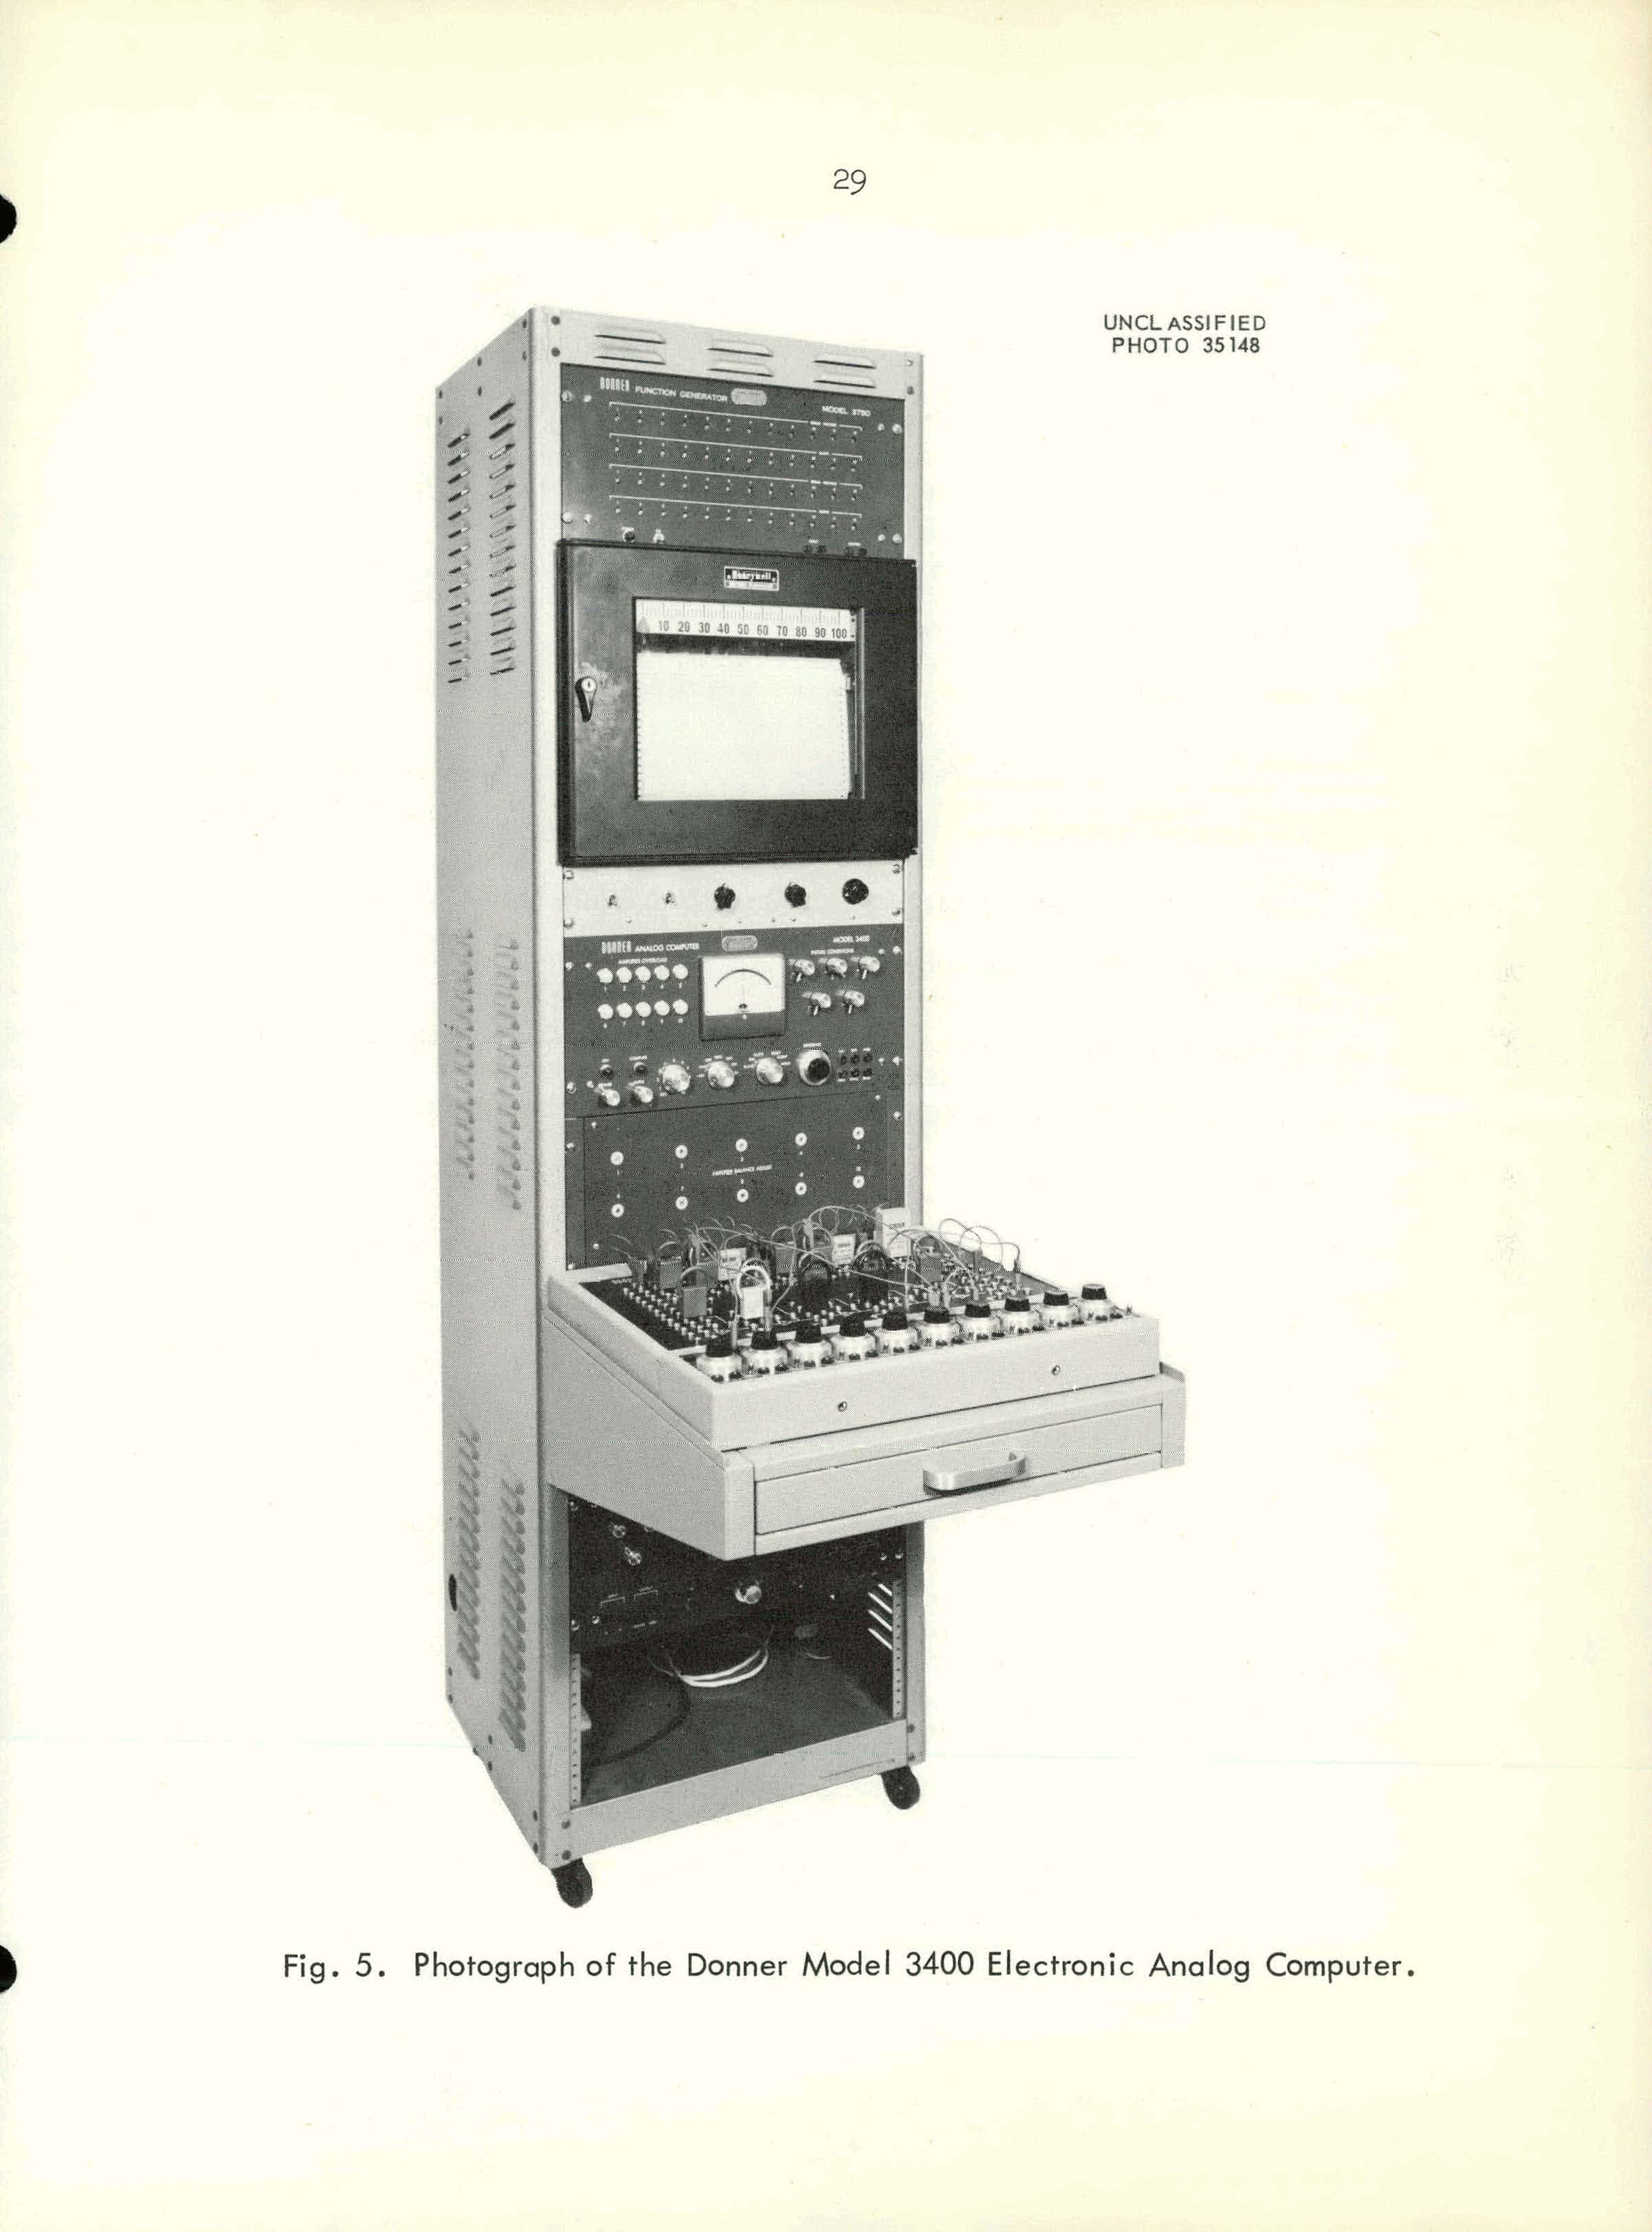 Donner model 3400 Analog Computer